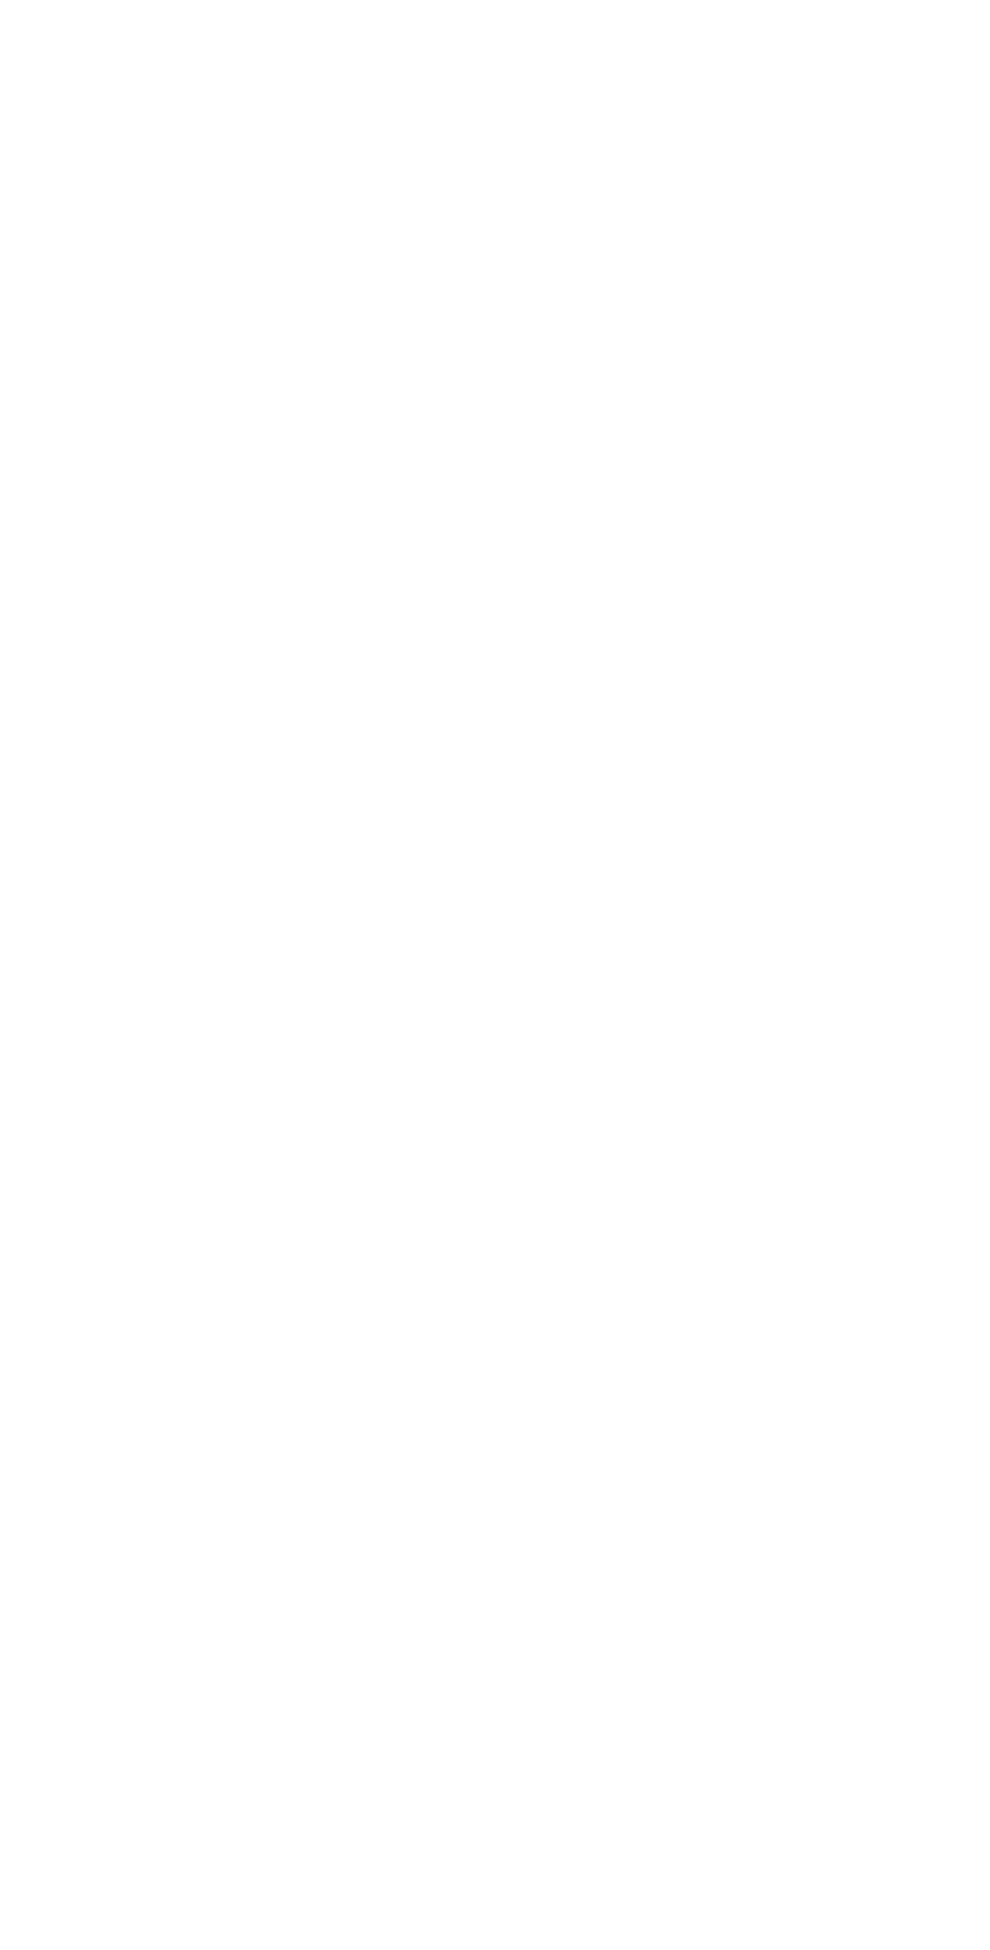 L27